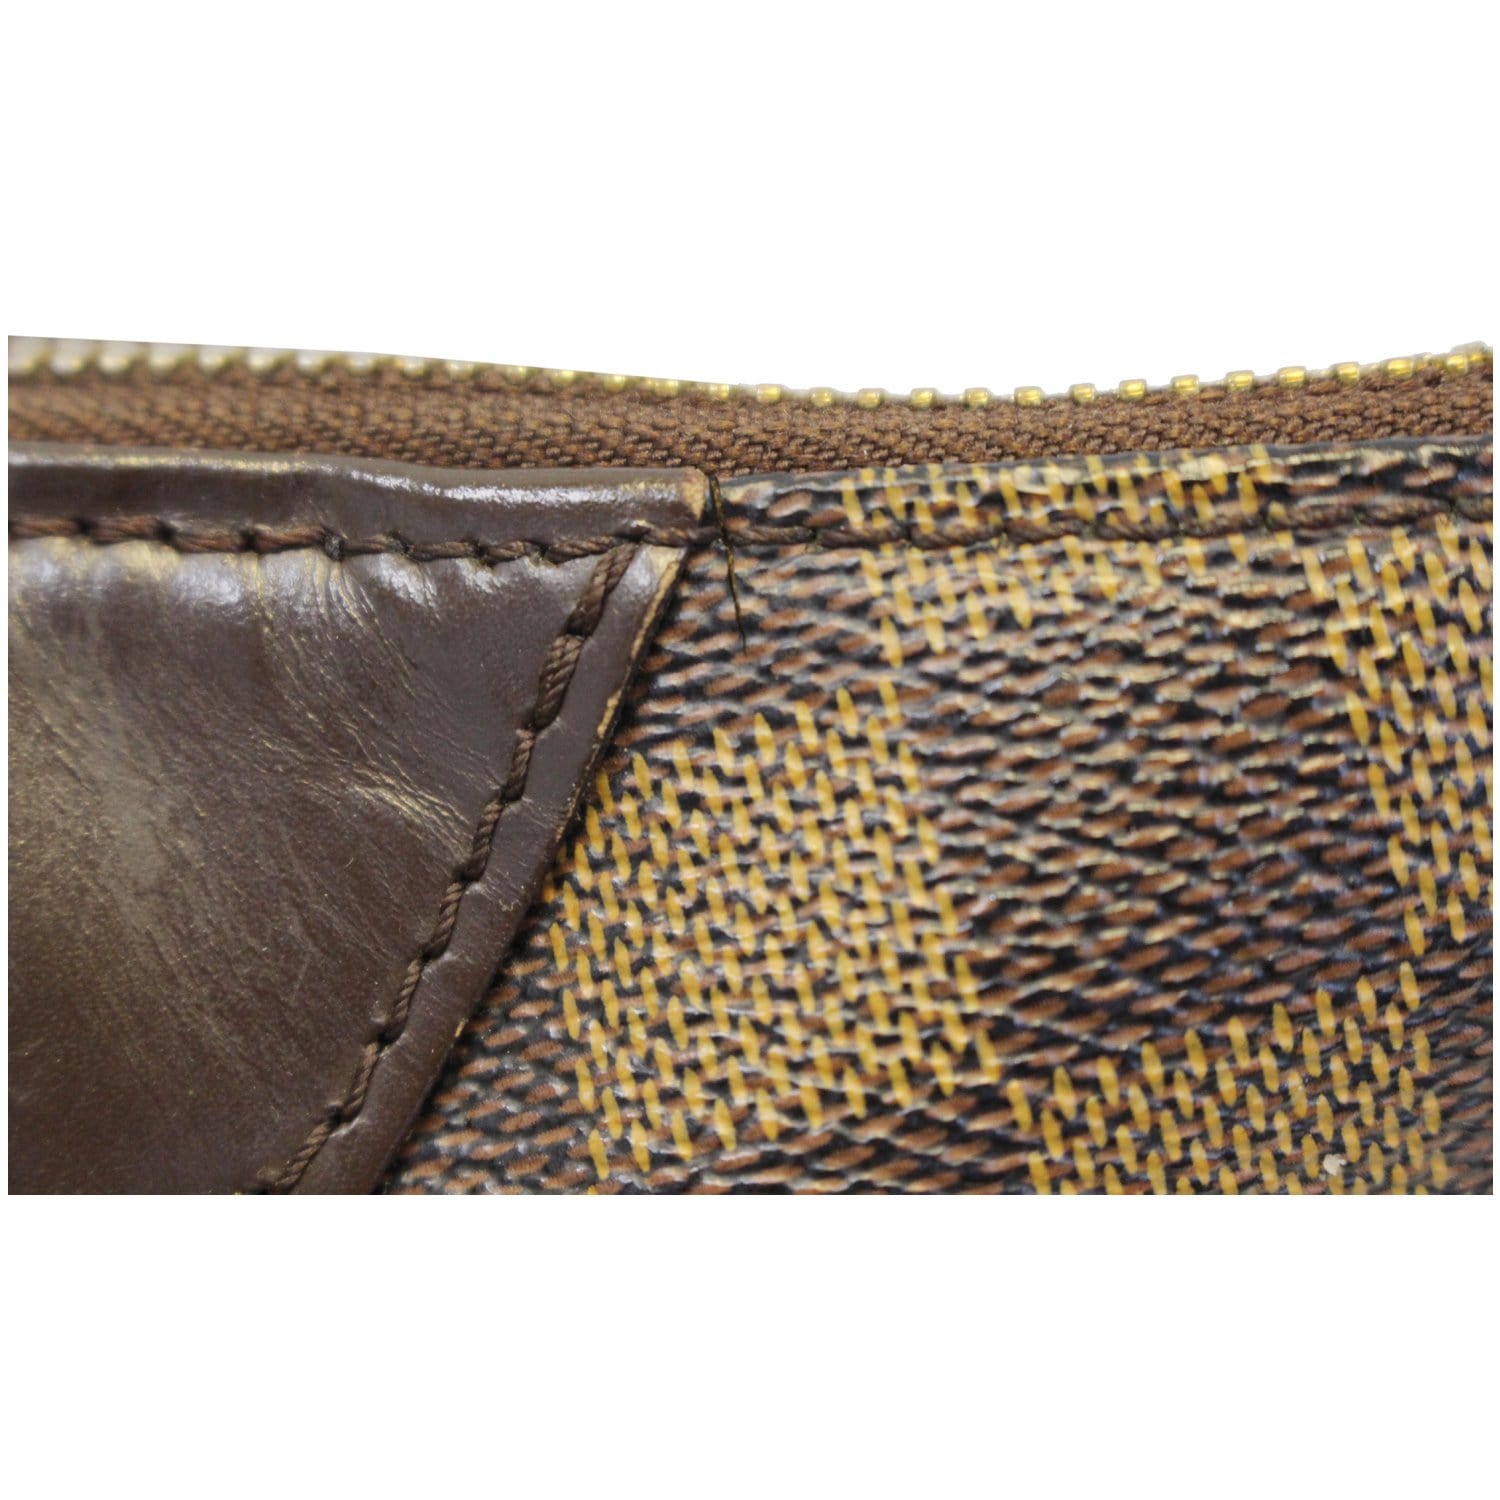 Louis Vuitton Westminster Handbag 377015